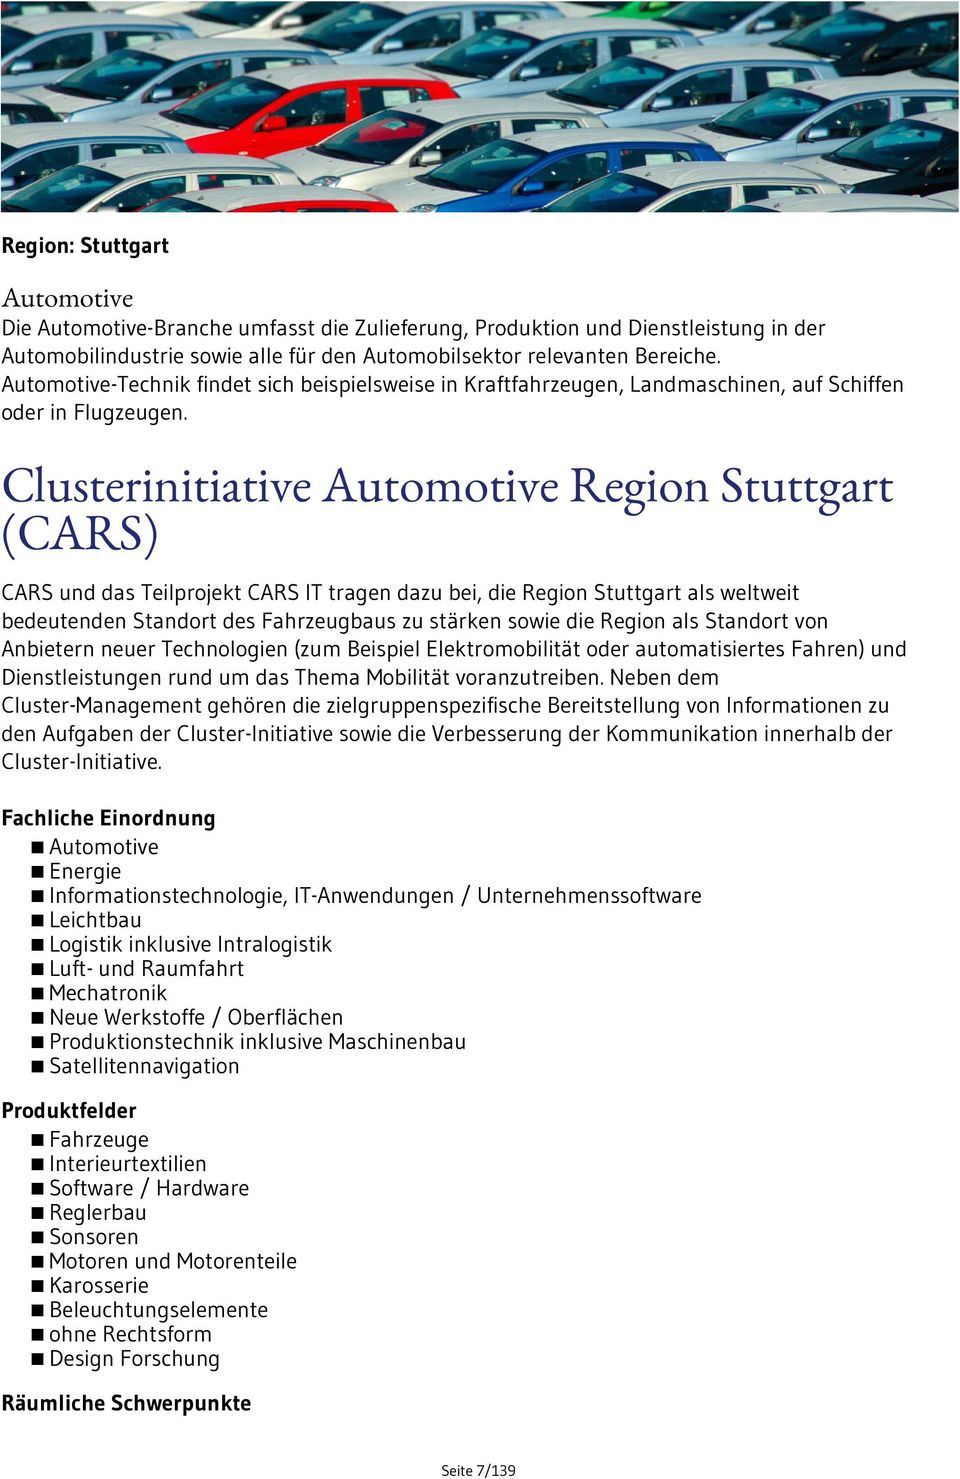 Clusterinitiative Automotive Region Stuttgart (CARS) CARS und das Teilprojekt CARS IT tragen dazu bei, die Region Stuttgart als weltweit bedeutenden Standort des Fahrzeugbaus zu stärken sowie die